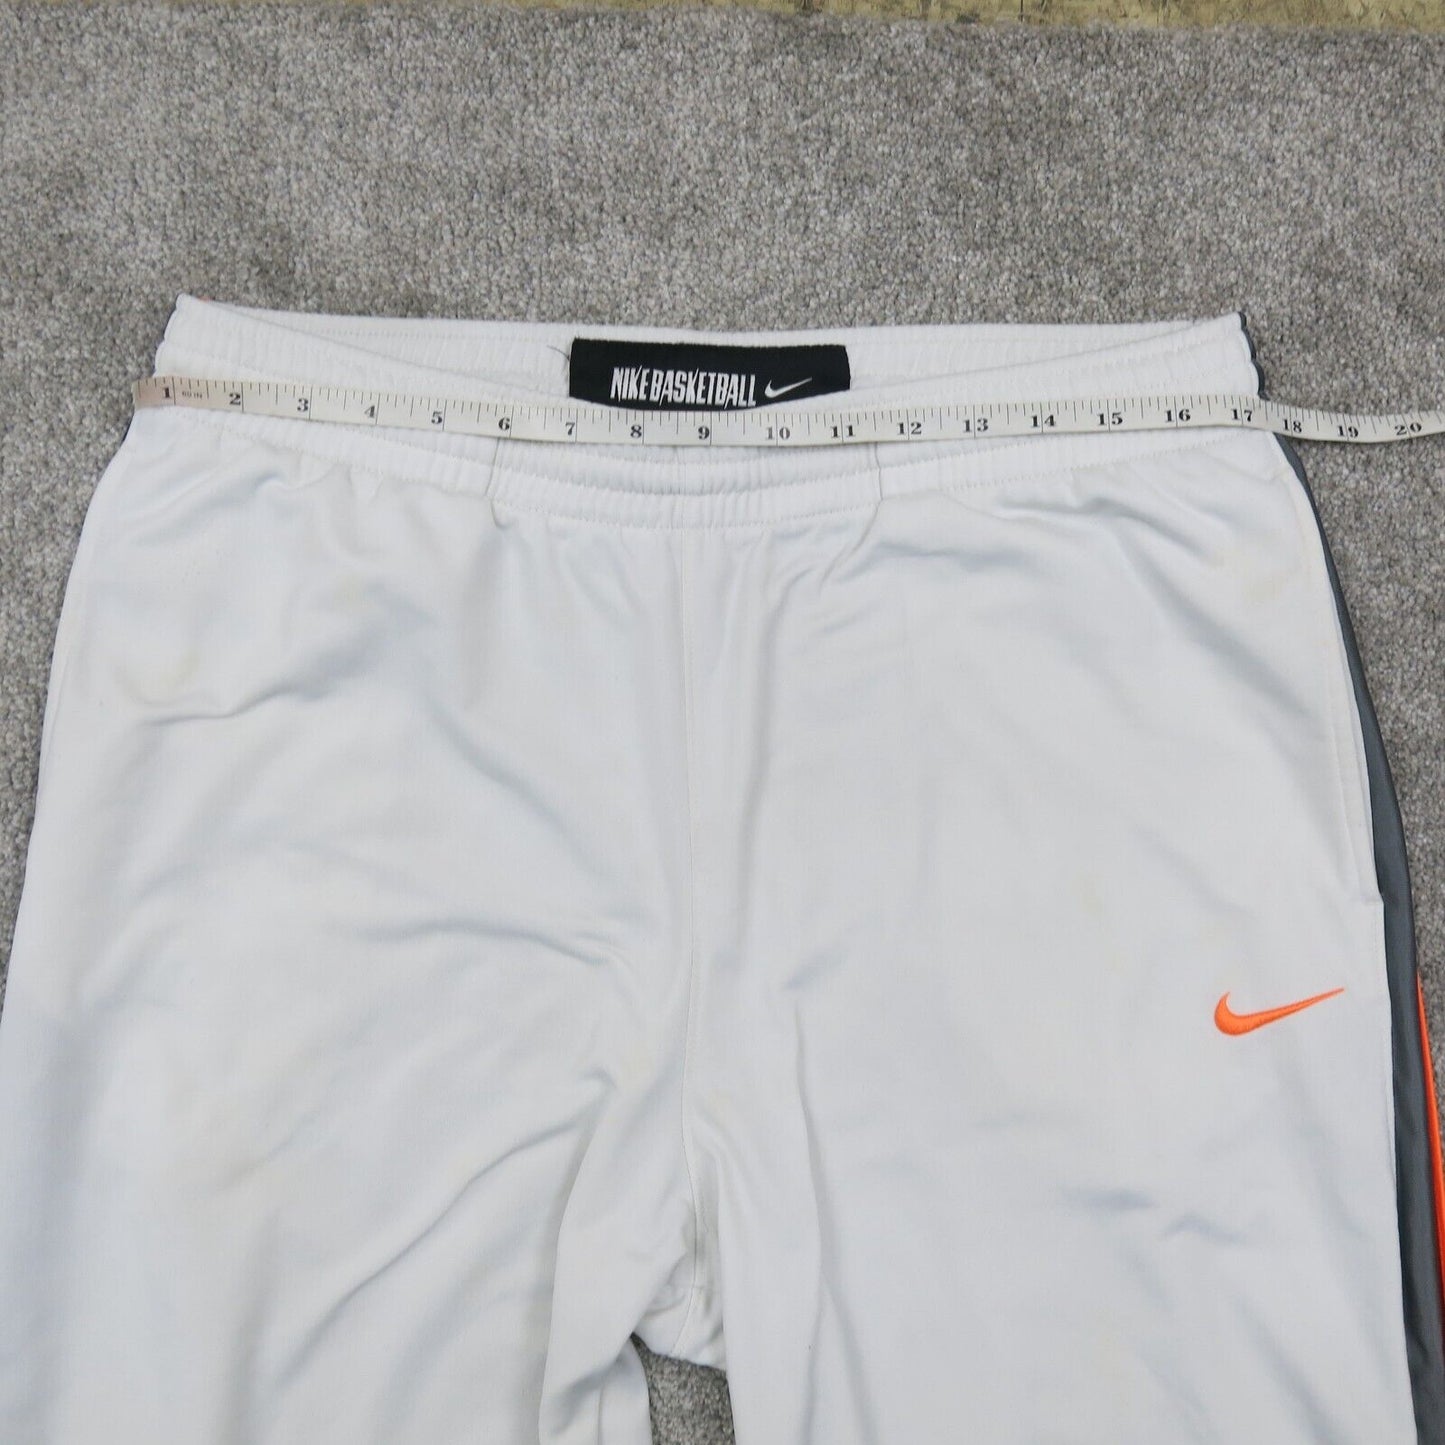 Nike Mens Activewear Basketball Pant Mid Rise Elastic Waist White Size Large